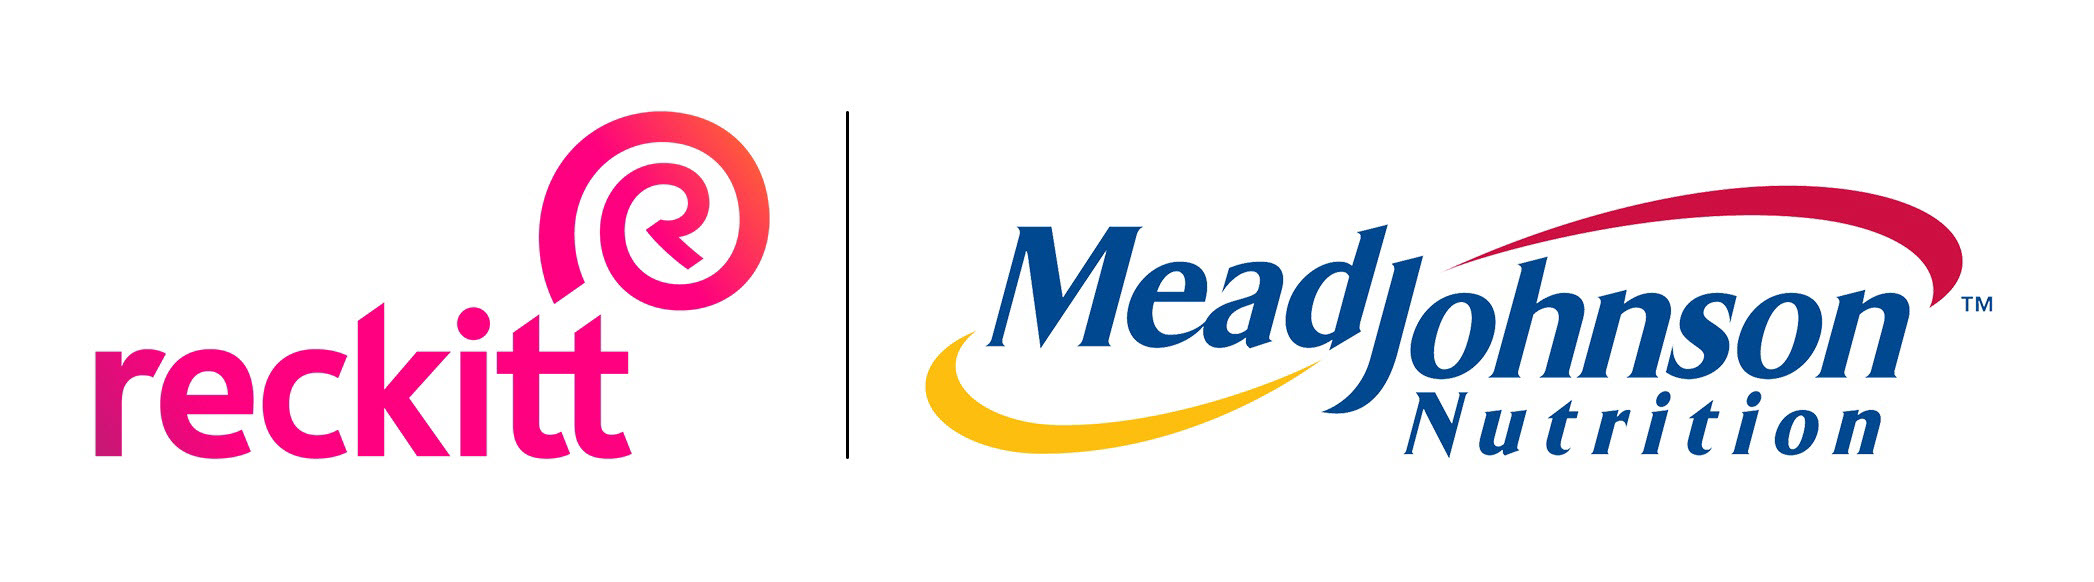 Reckitt - Mead Johnson logo (002)